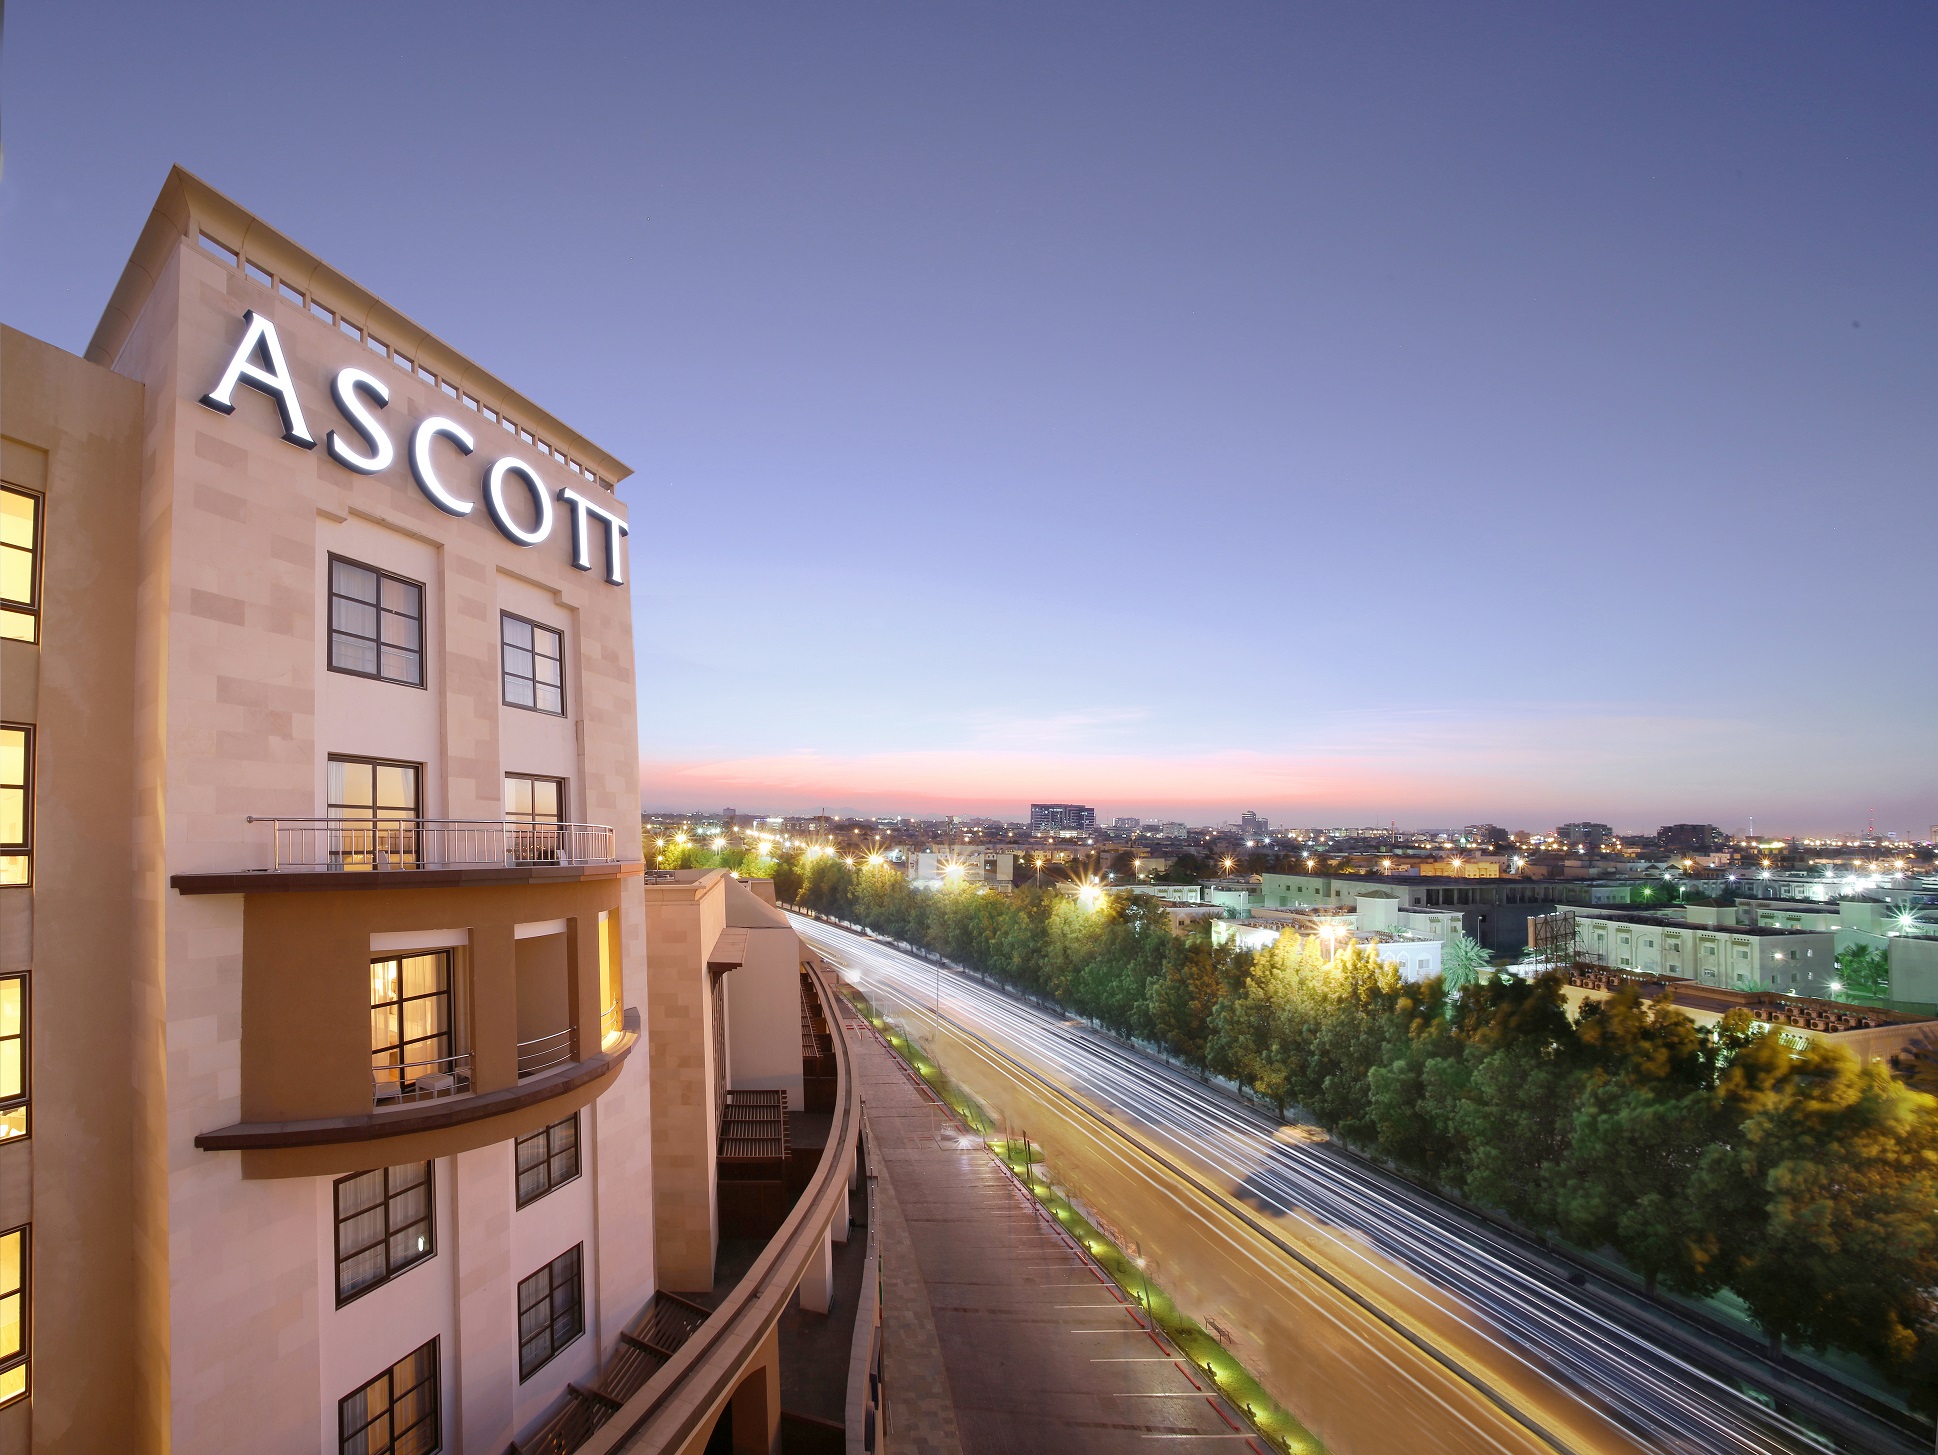 أسكوت تقدم خصم يصل إلى 20% على الإقامة في فنادقها إحتفالاً بموسم جدة